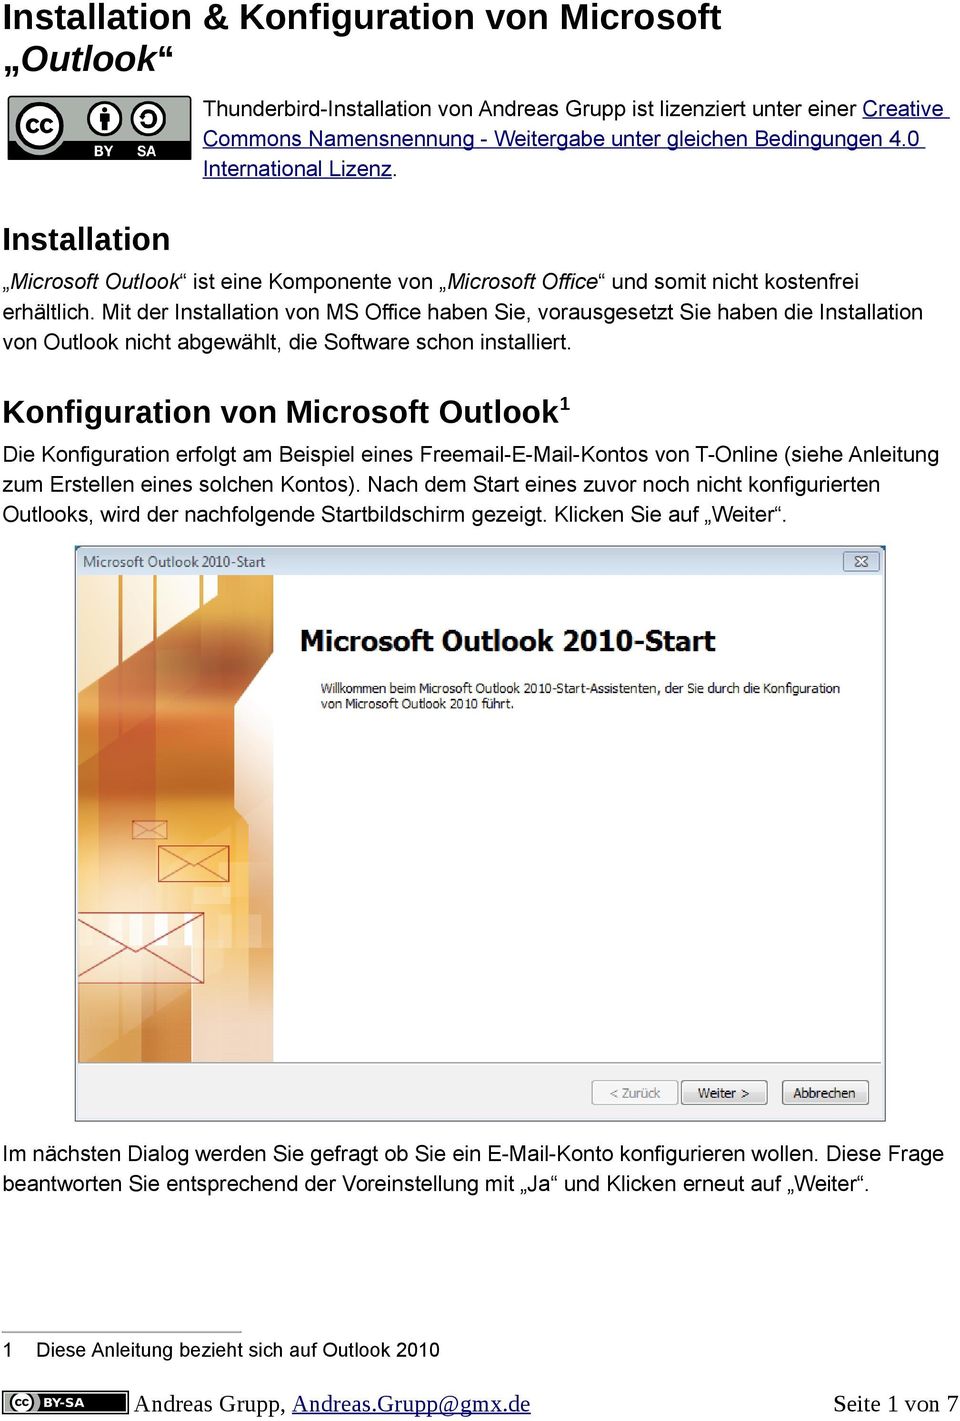 Mit der Installation von MS Office haben Sie, vorausgesetzt Sie haben die Installation von Outlook nicht abgewählt, die Software schon installiert.